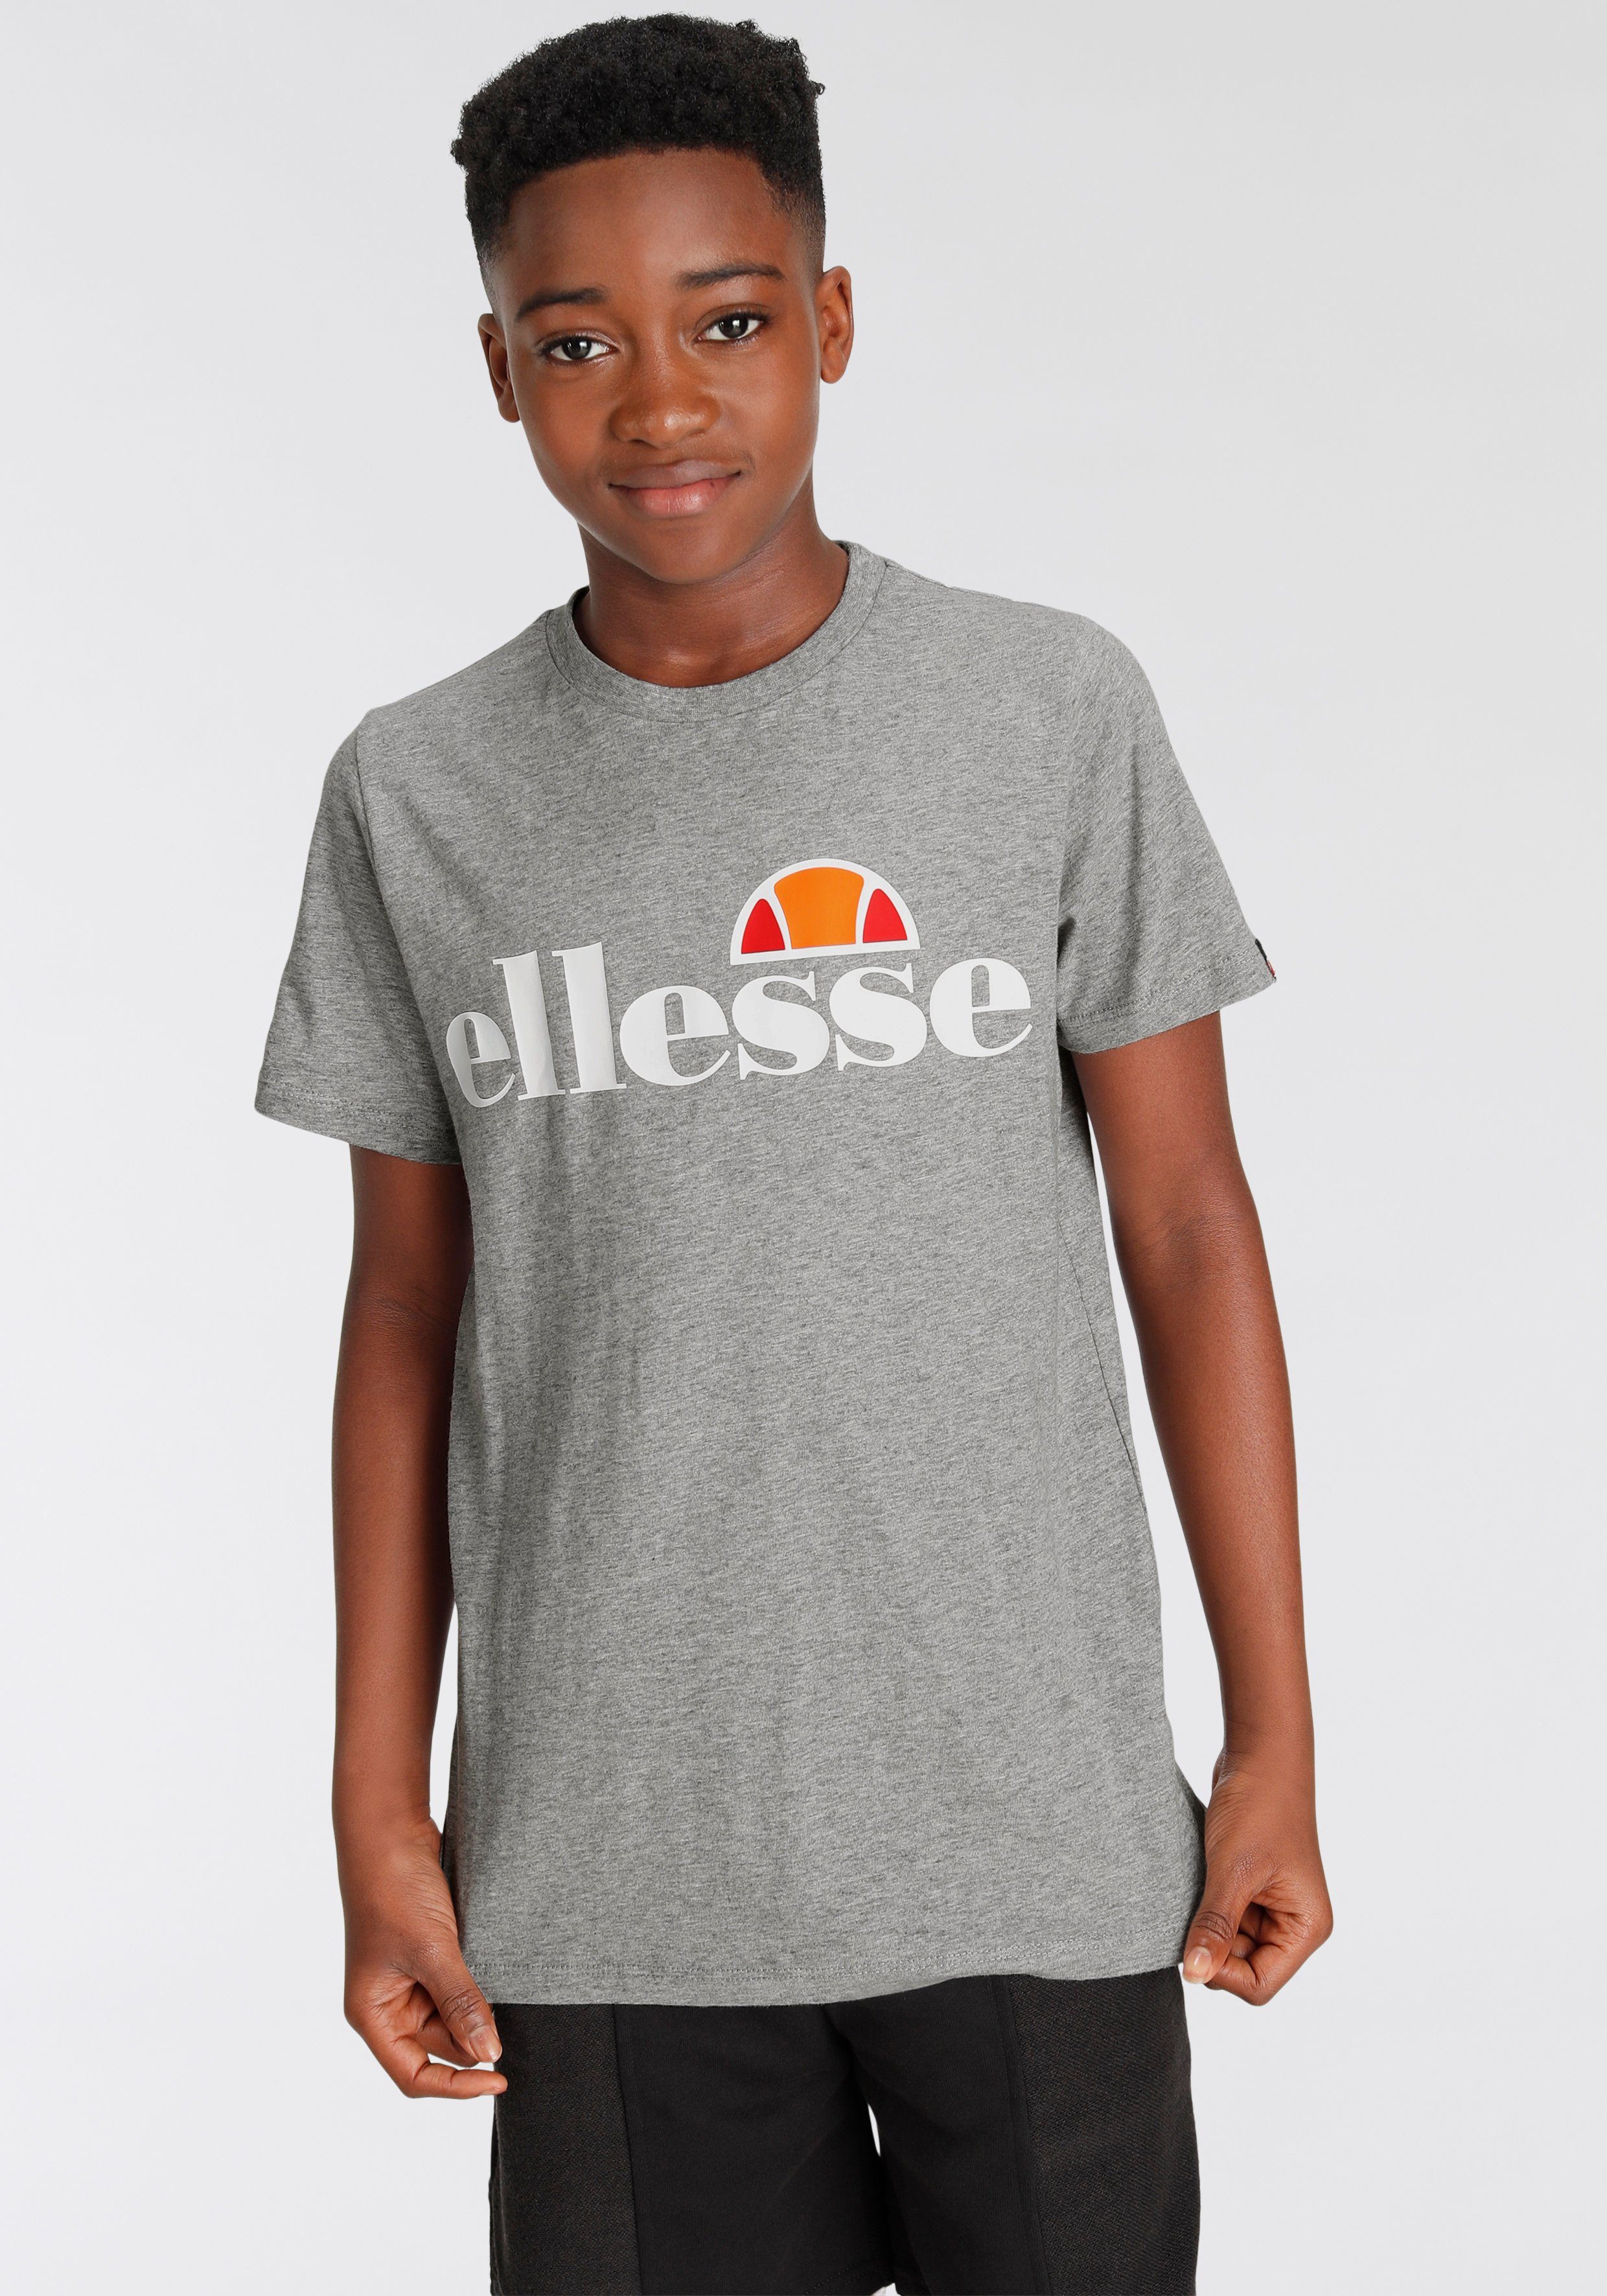 Ellesse T-Shirt JNR- TEE mittelgrau-meliert MALIA für Kinder